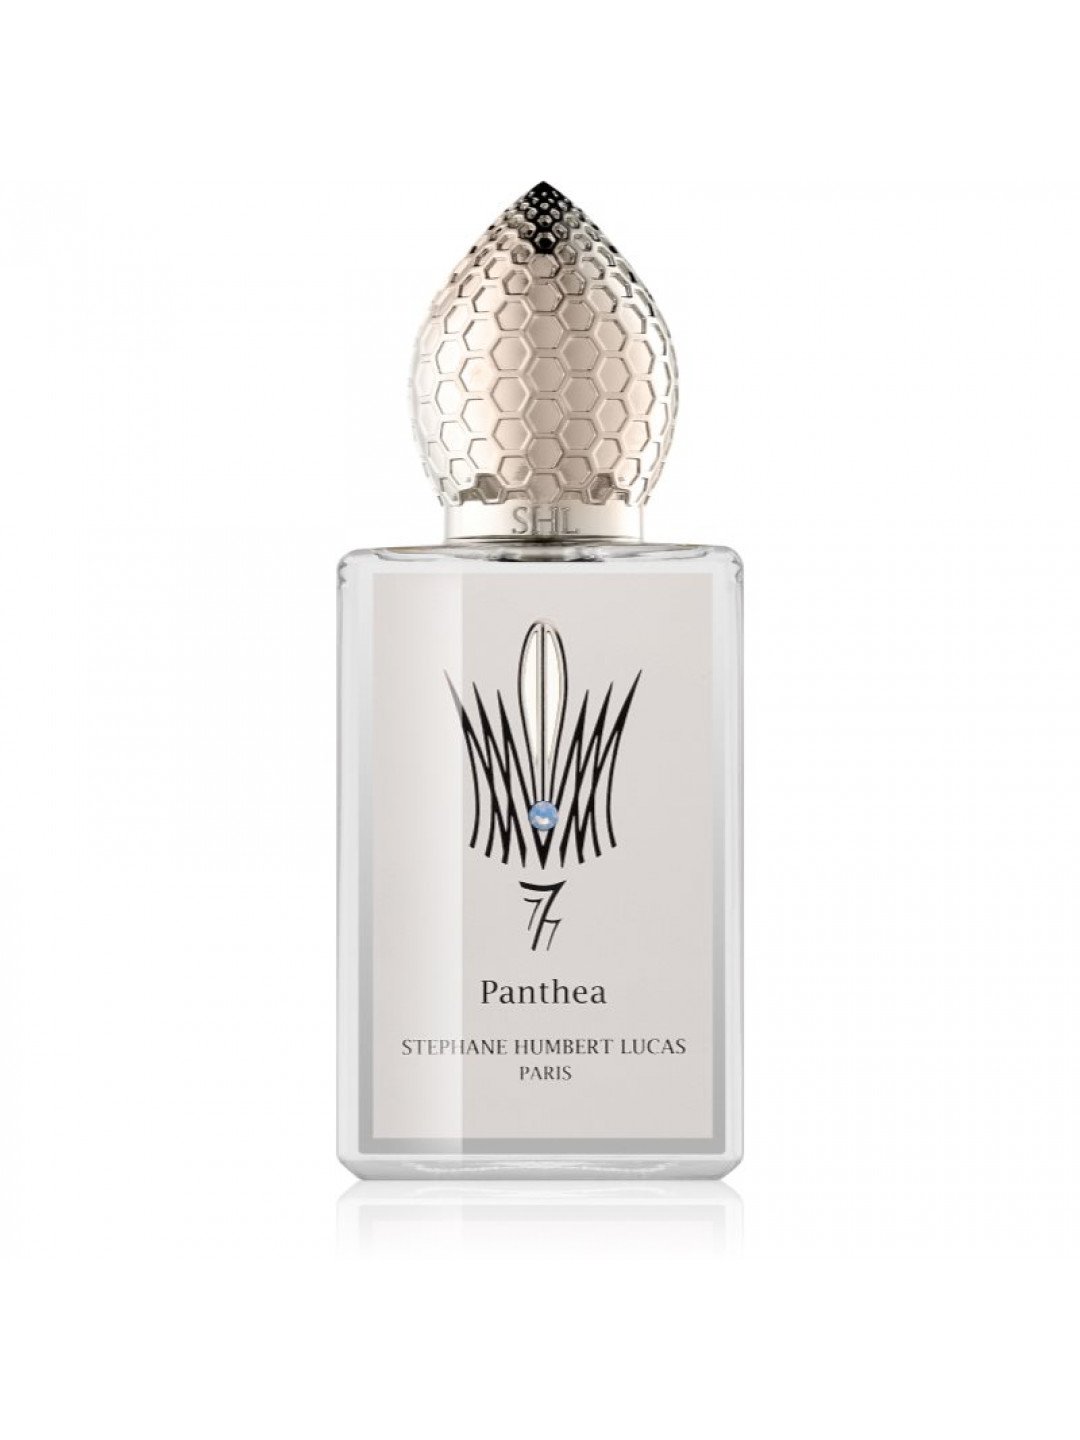 Stéphane Humbert Lucas 777 Panthea parfémovaná voda unisex 50 ml